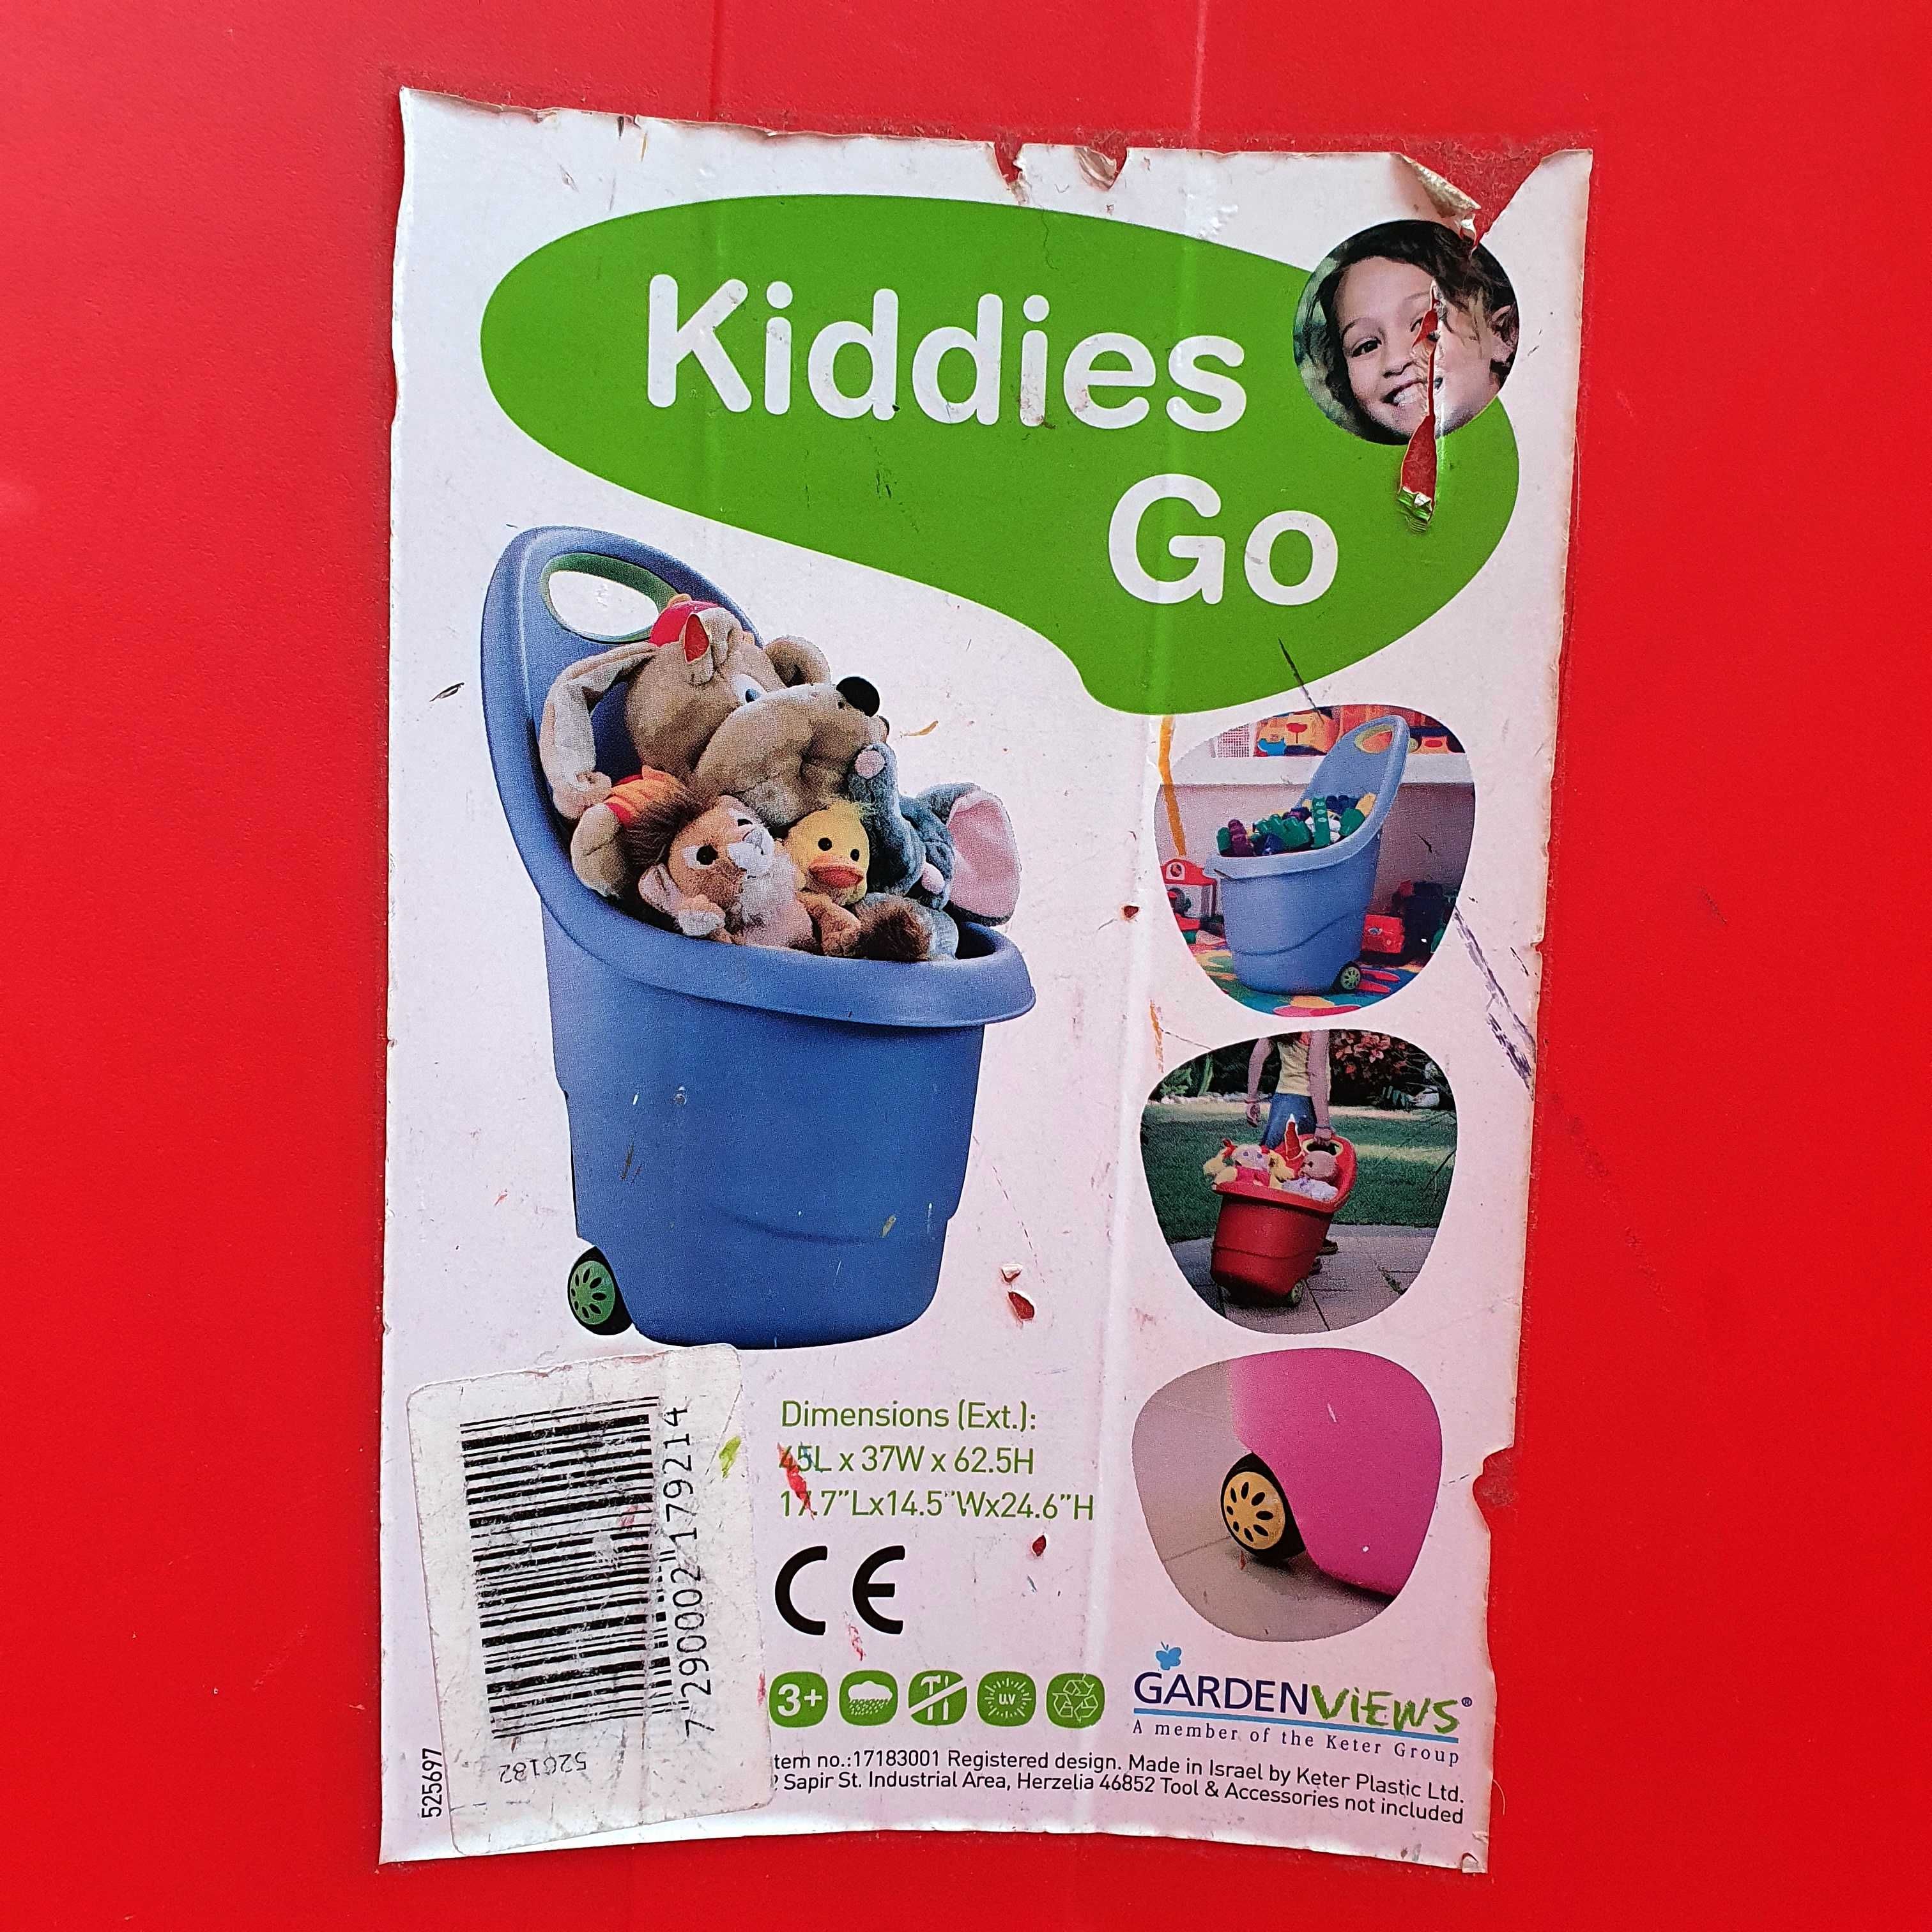 Kiddies Go - Toy Storage